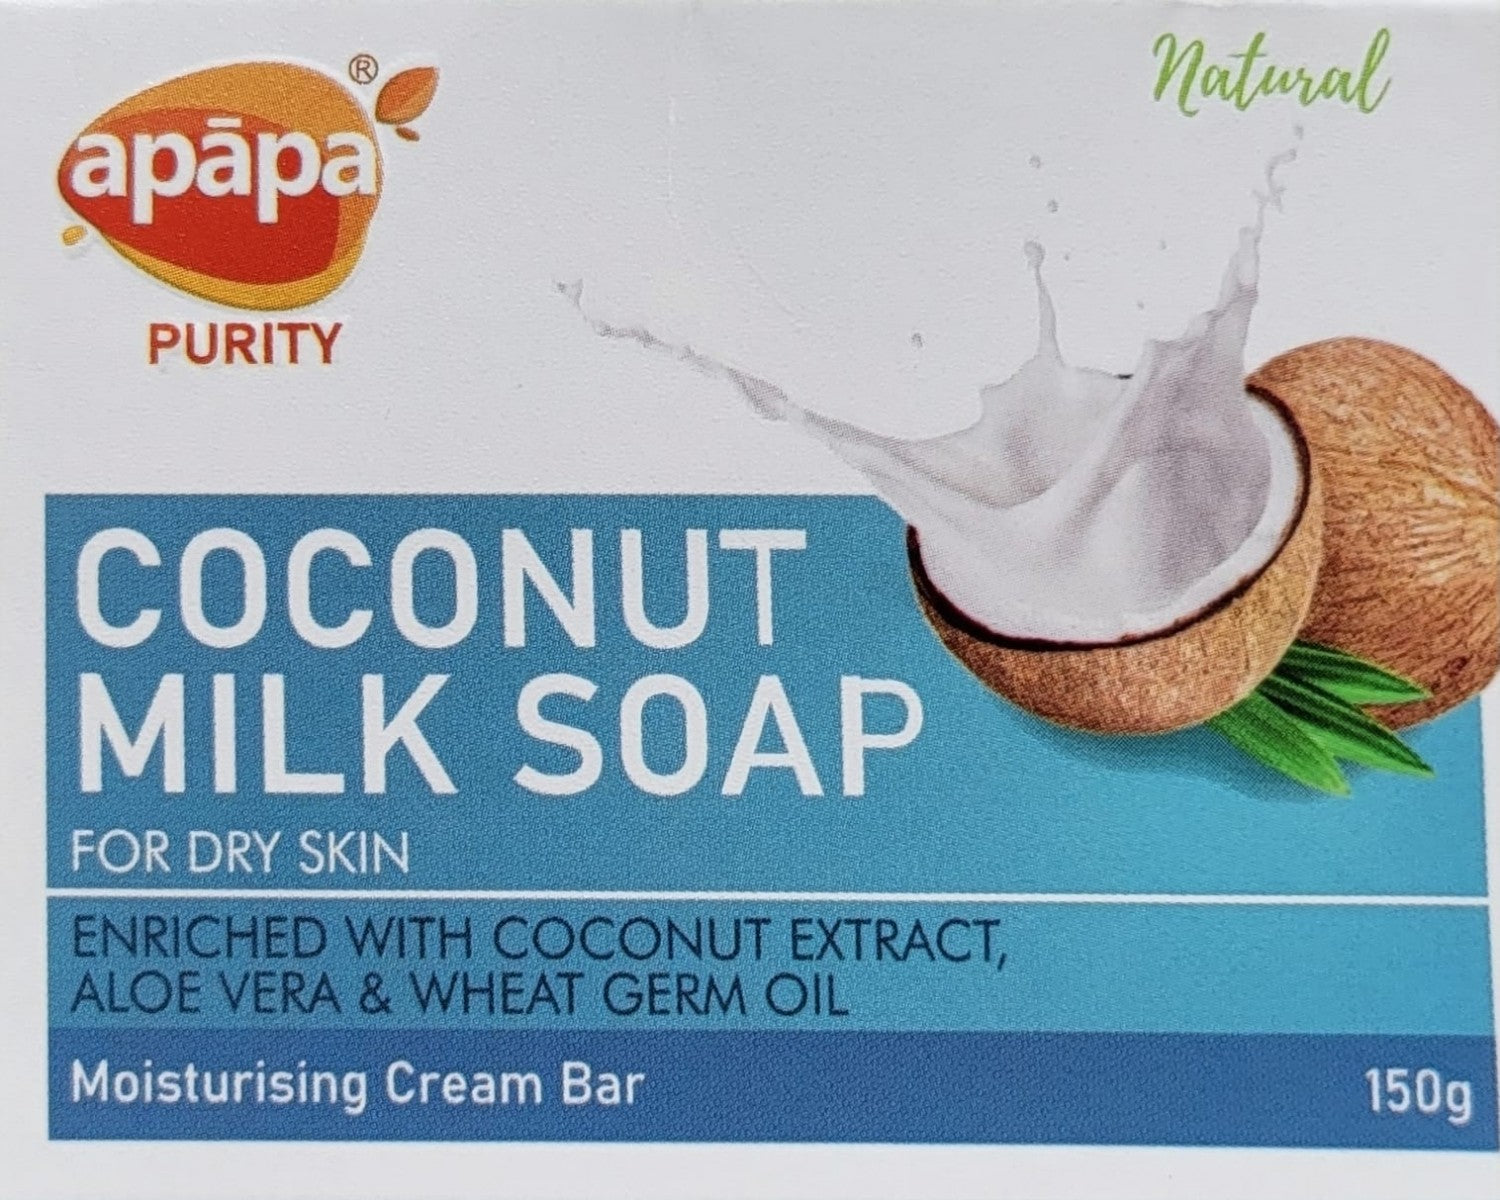 Apapa Coconut Milk Soap